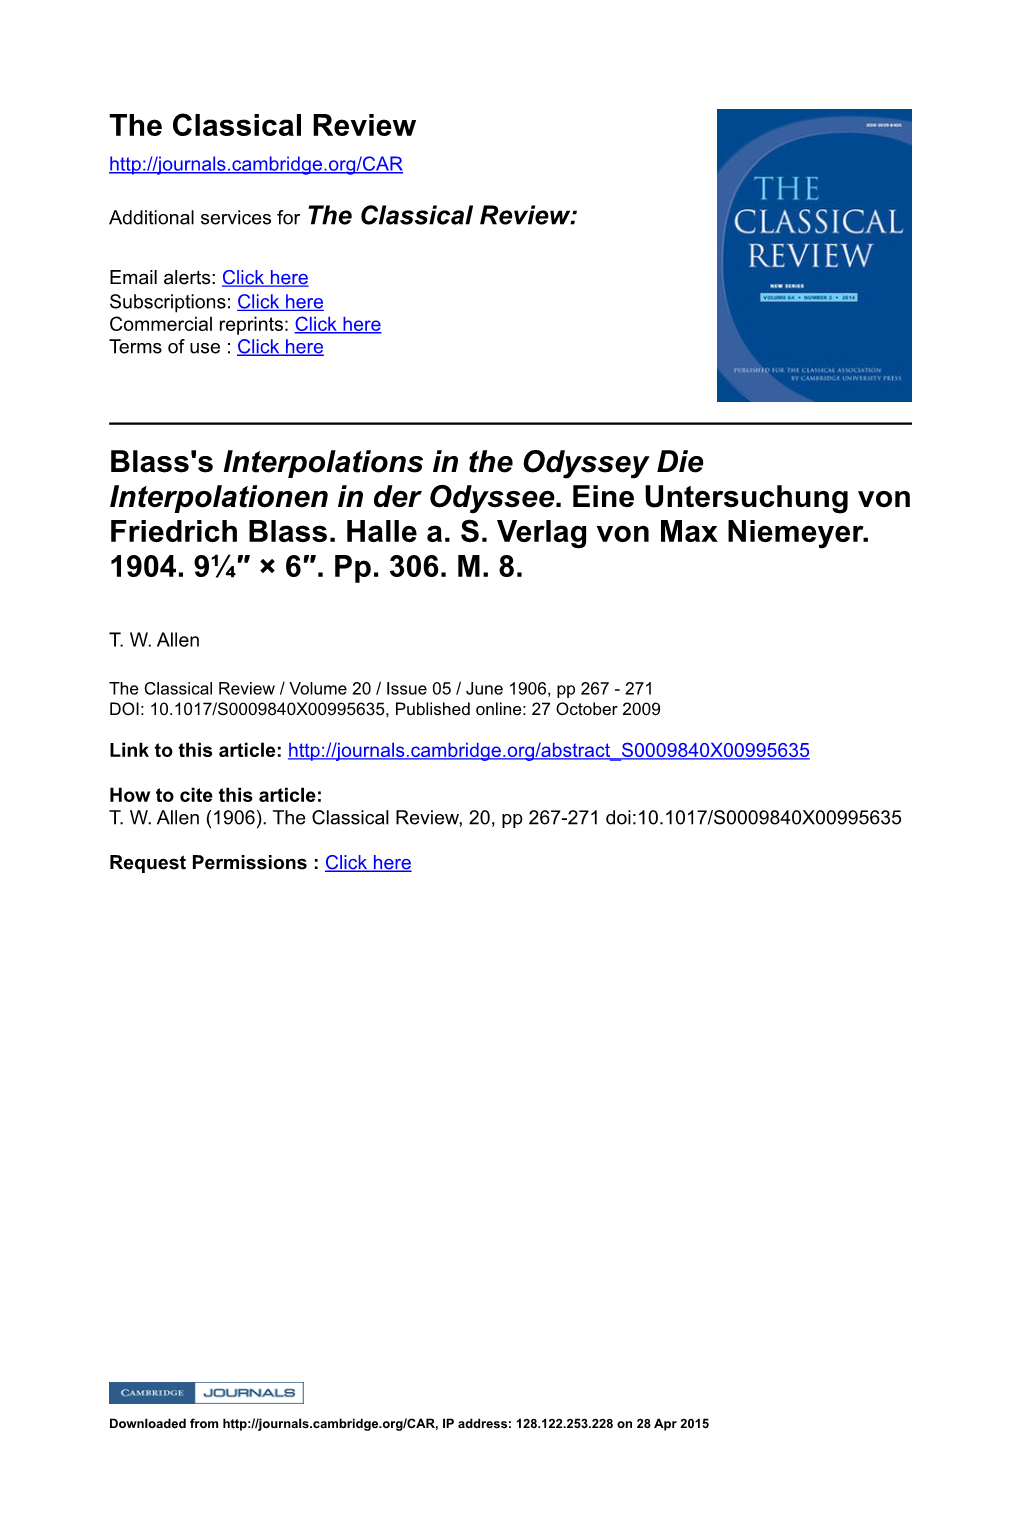 Blass's Interpolations in the Odyssey Die Interpolationen in Der Odyssee